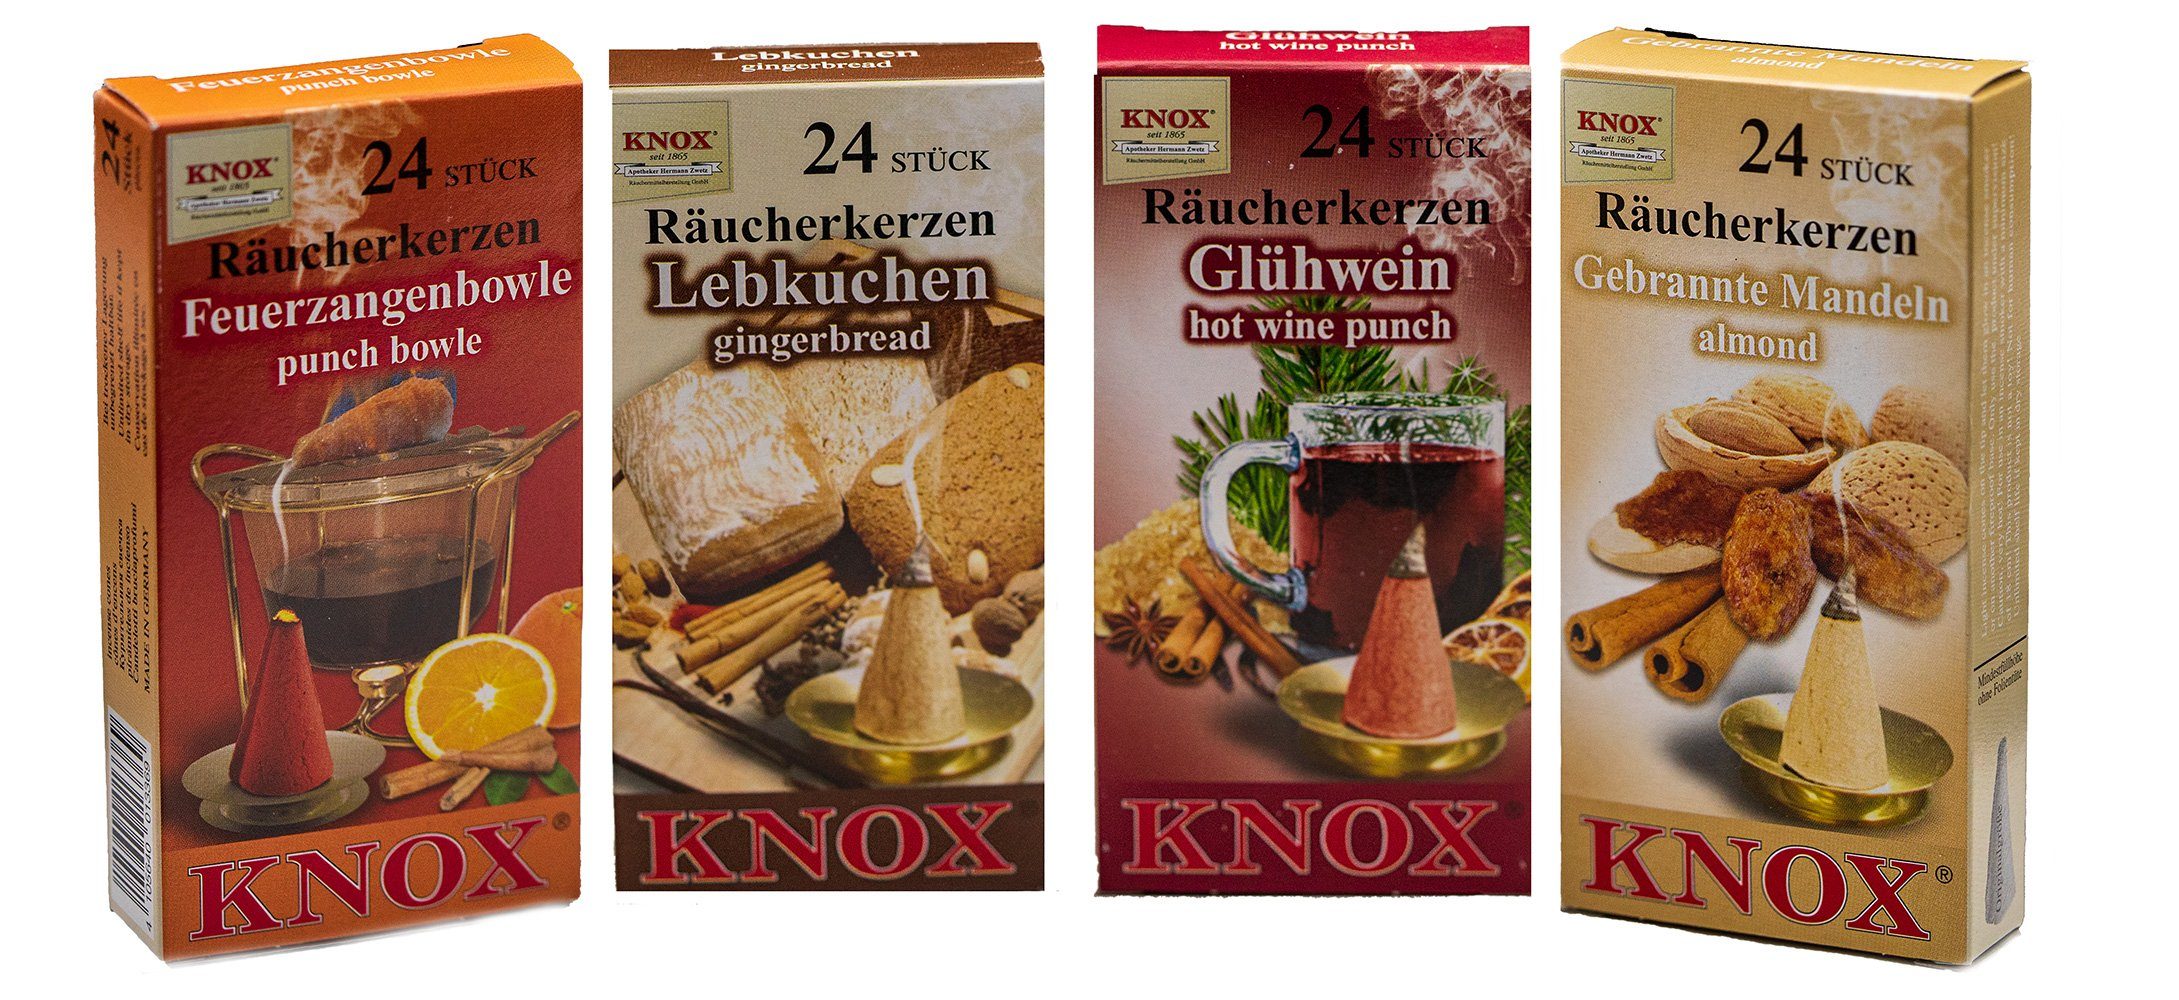 KNOX Duftkerze 4er Set Gebr. Mandel / Feuerzangenbowle / Glühwein /  Lebkuchen, Räucherkerzen Größe M - Inhalt jeweils 24 Stück - Made in Germany